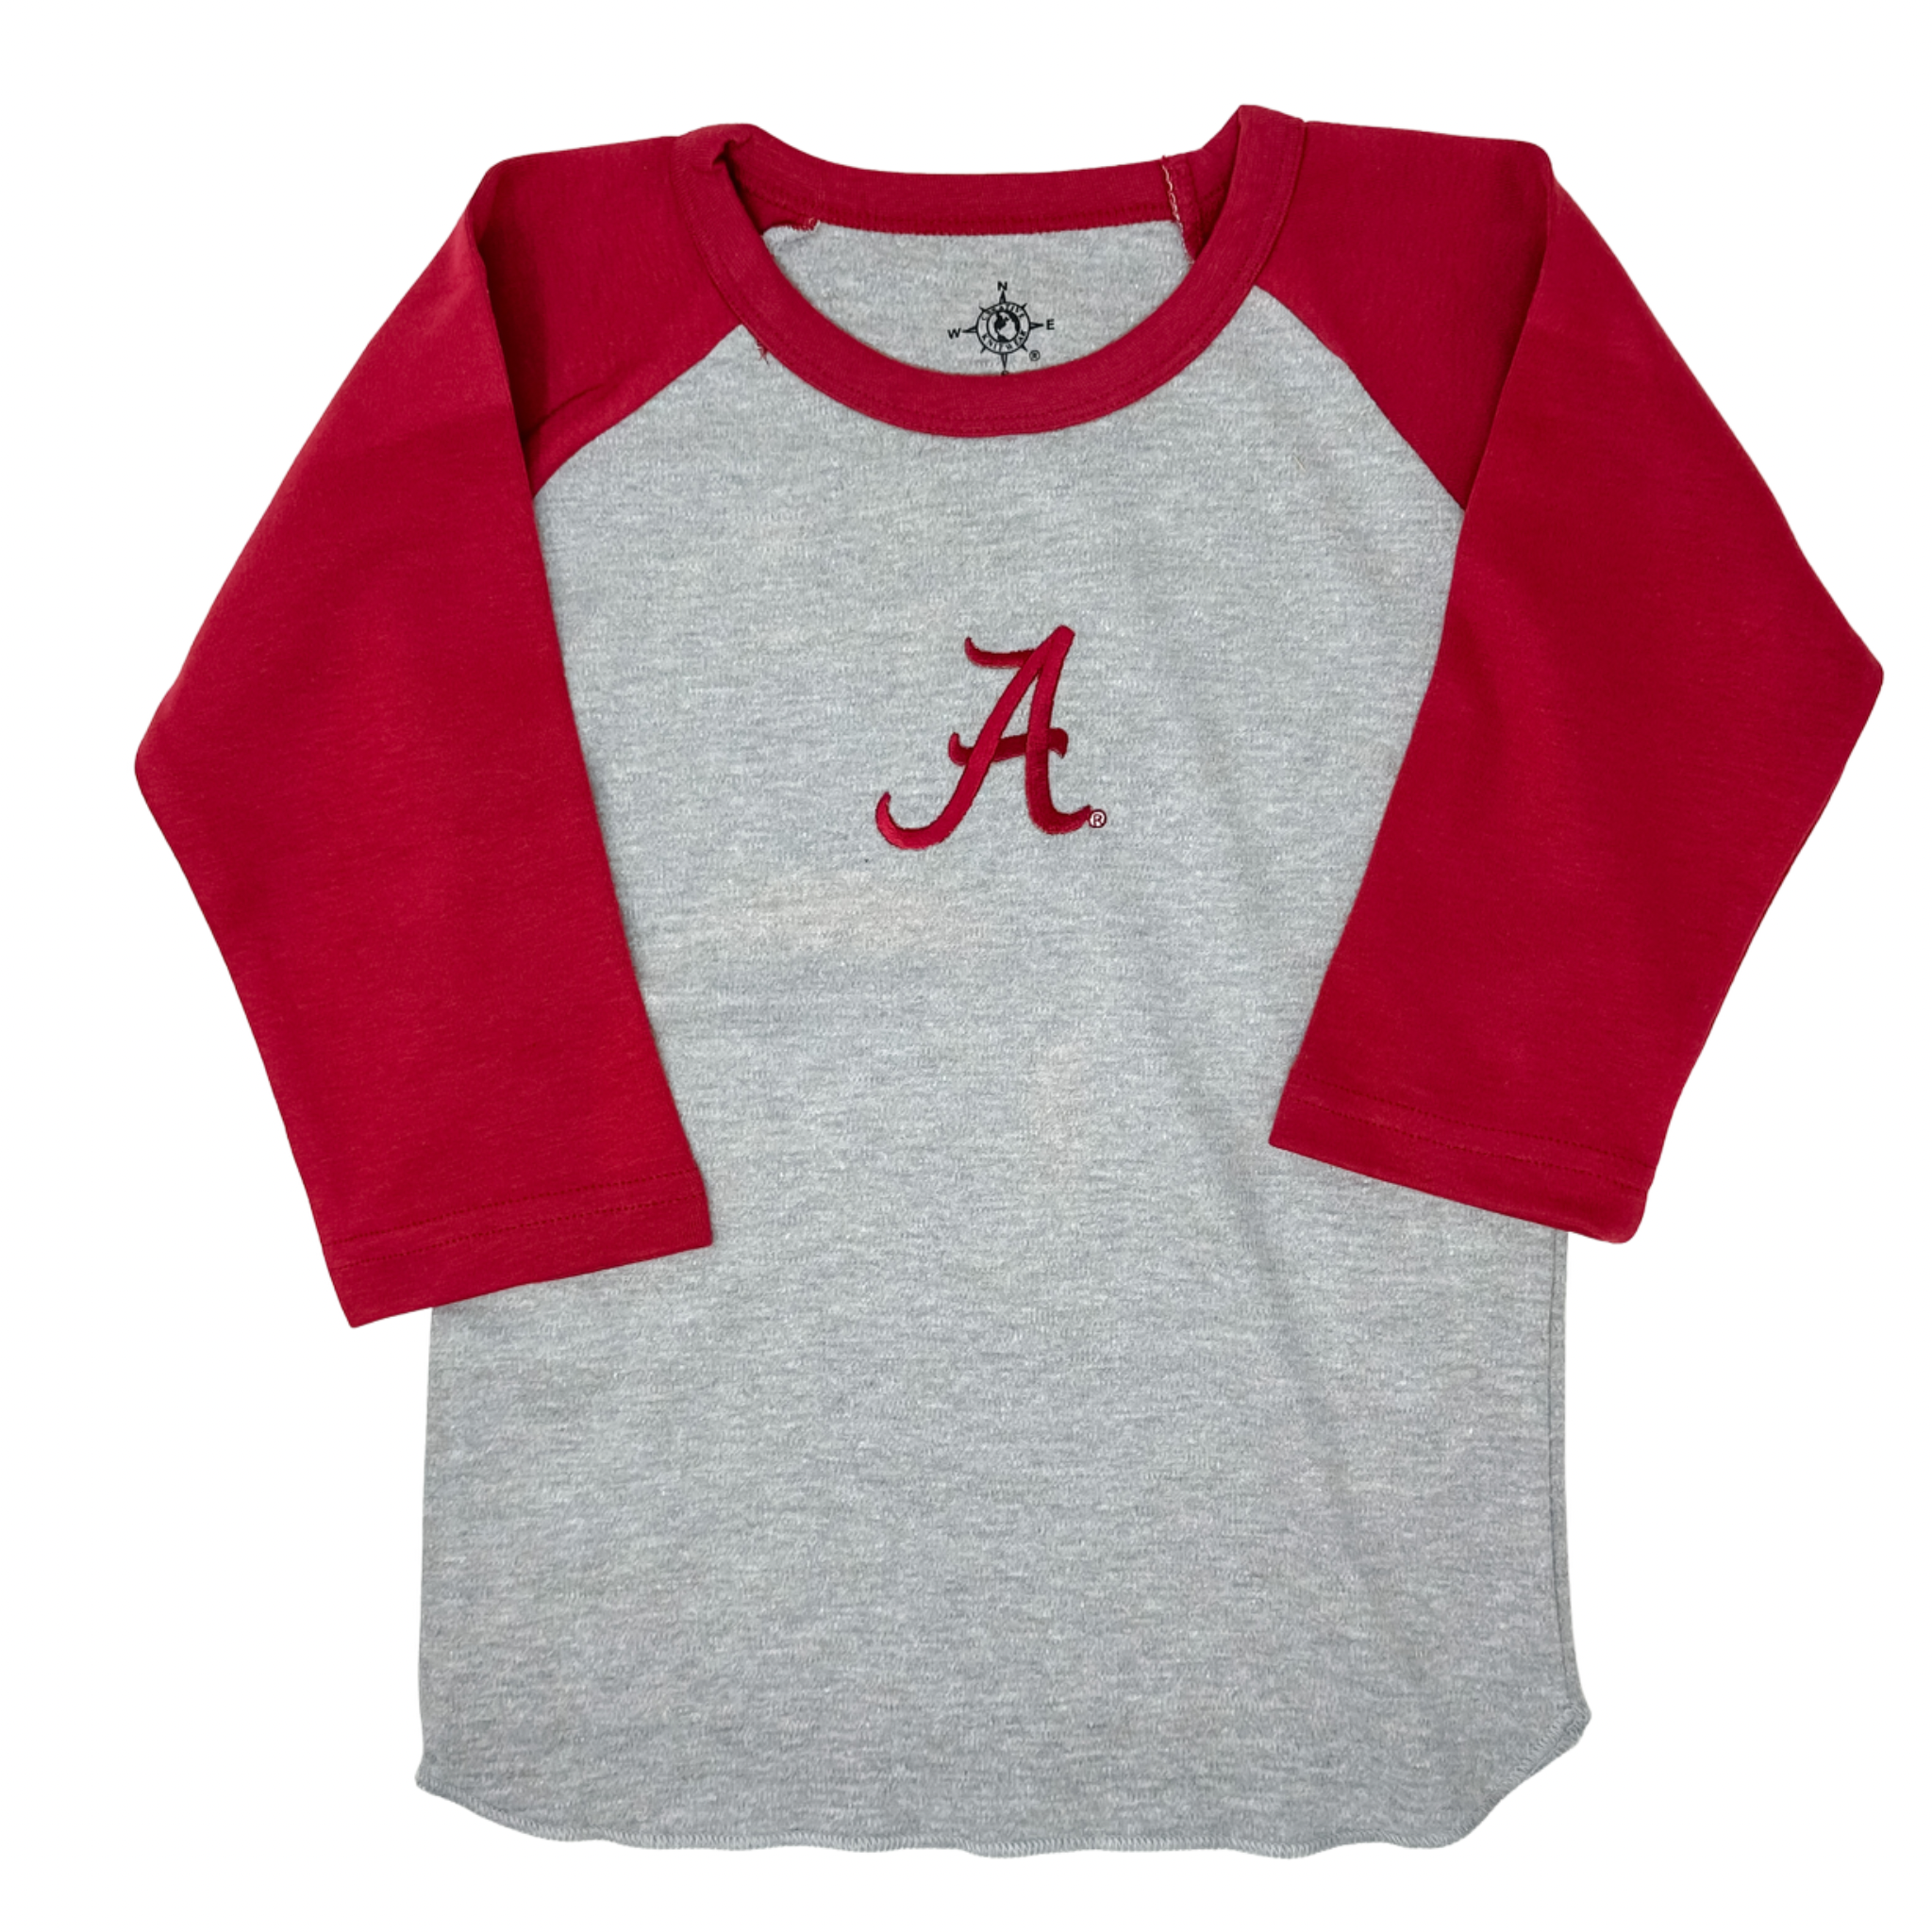 Creative Knitwear - Baseball Shirt - Bama Crimson